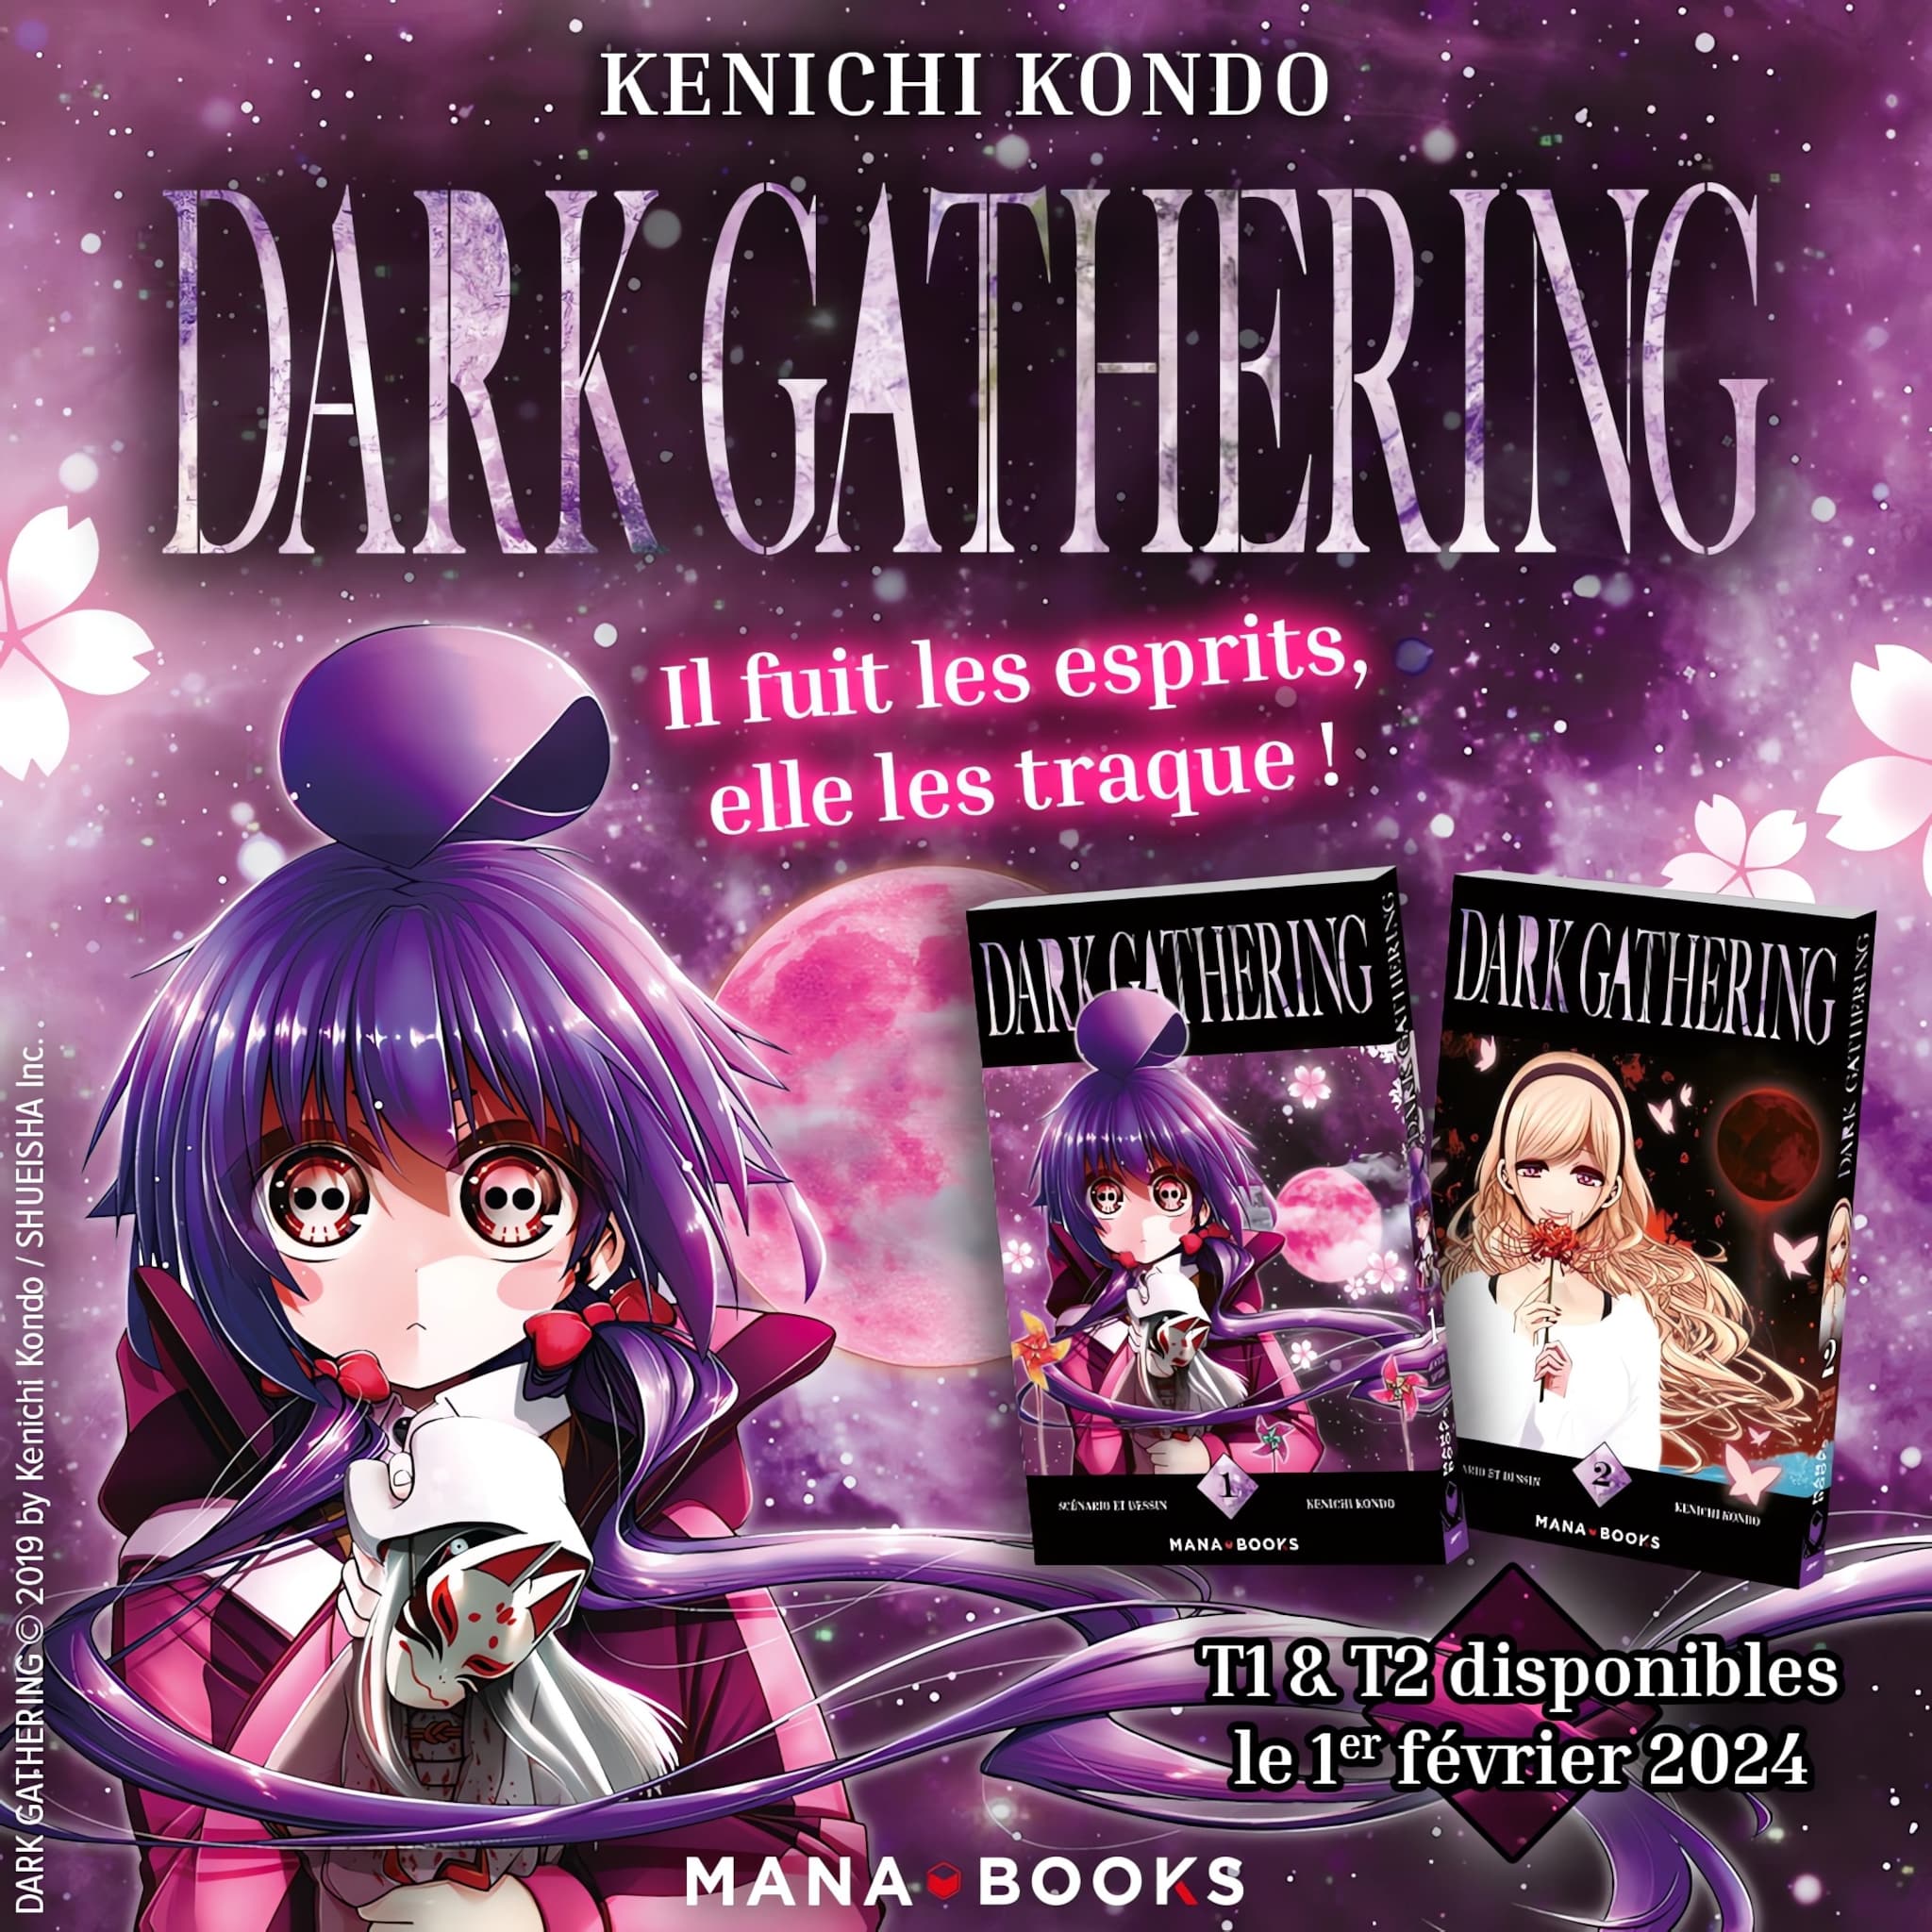 Annonce de la date de sortie en France du manga Dark Gathering aux éditions Mana Books